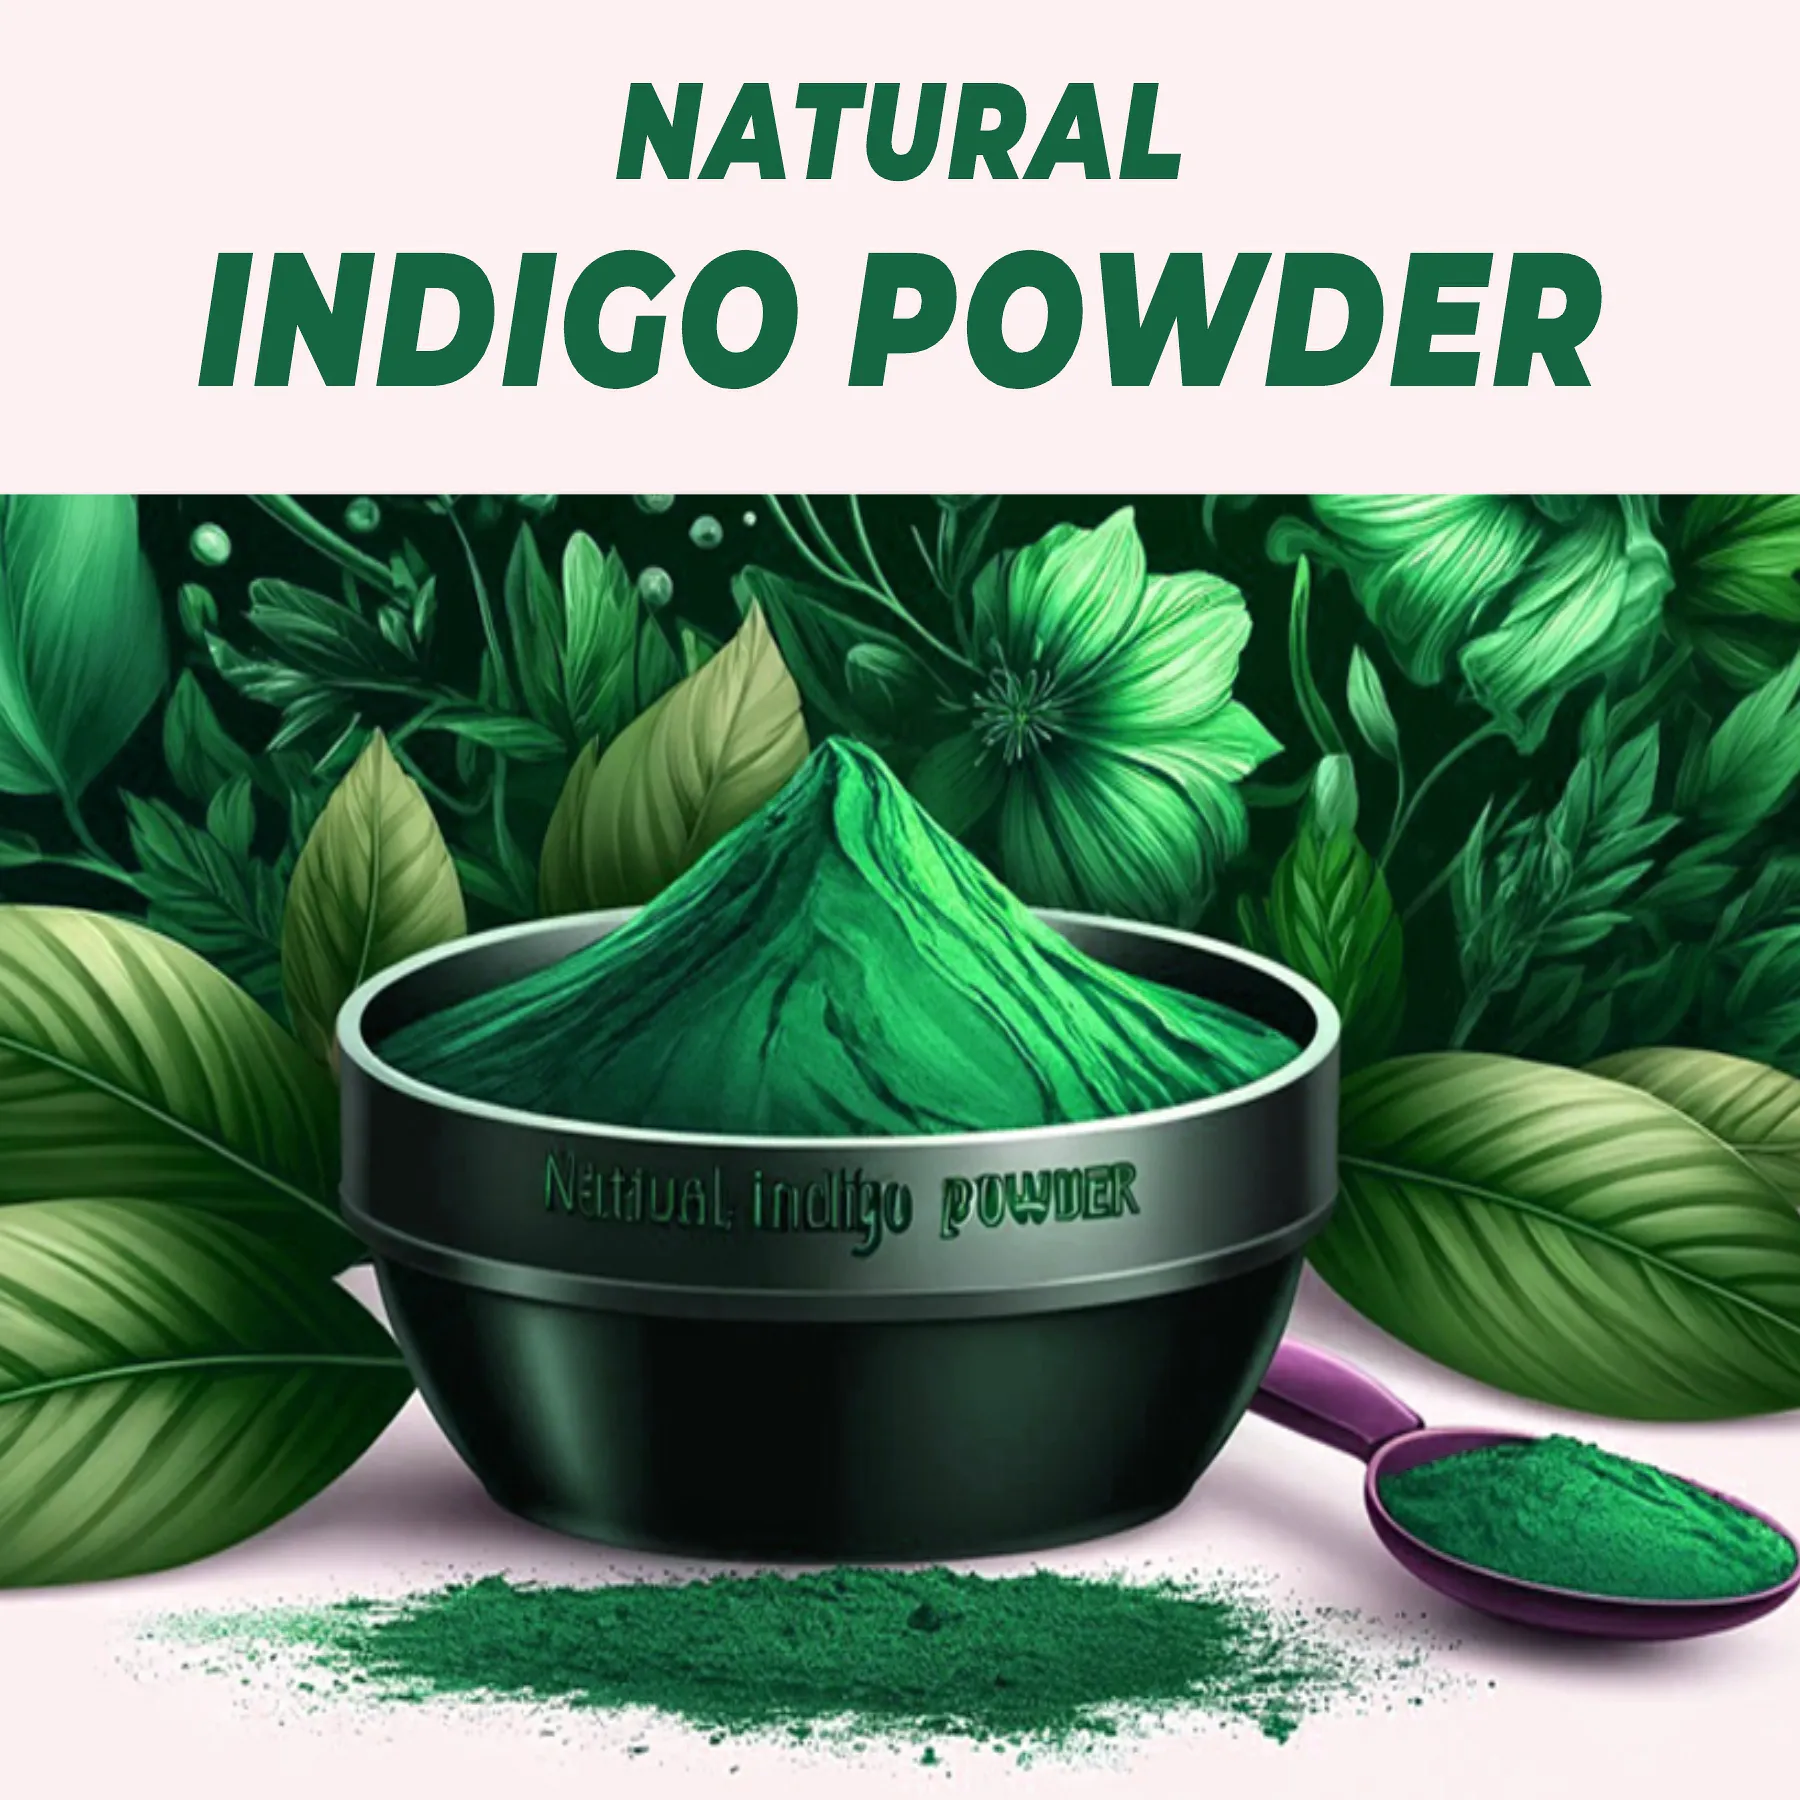 Indigo powder - www.dkihenna.com